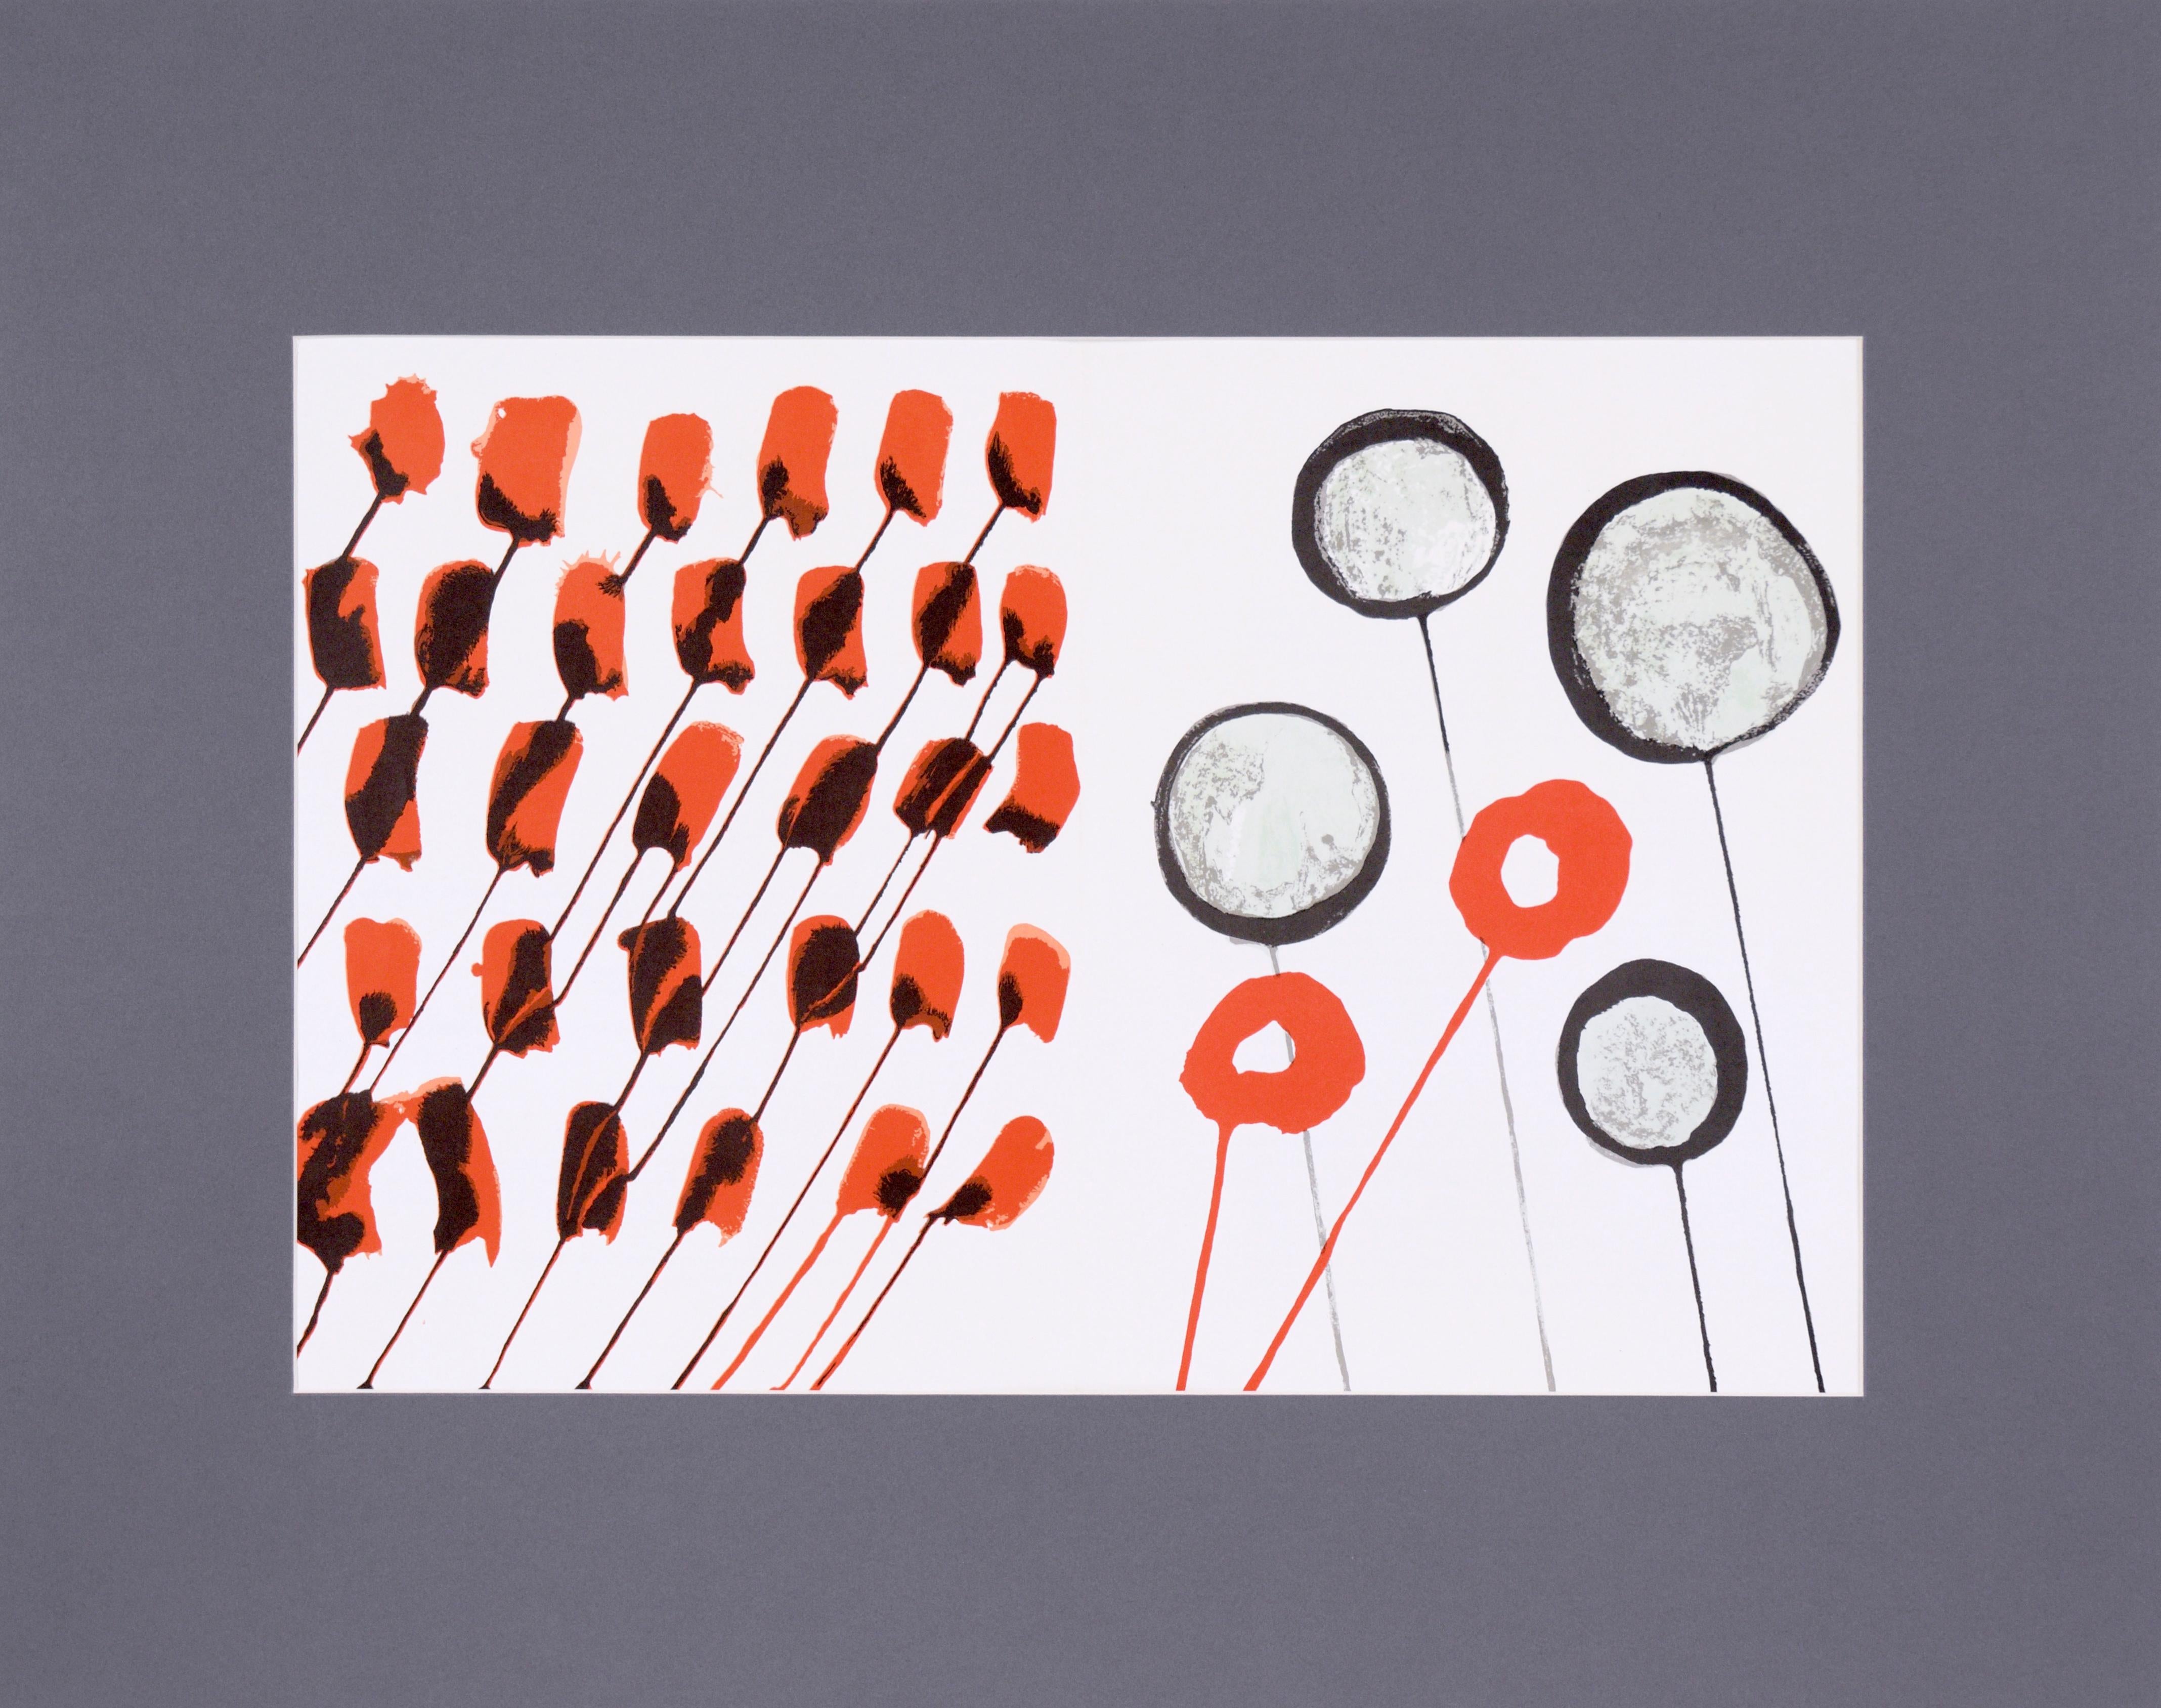 Lithographie du milieu du siècle Derrière le Miroir par Alexander Calder 
Lithographie double page vintage de 1960 d'Alexander Calder, non signée, faisant partie du portfolio "Derriere le Miroir". Publié par : Galerie Maeght, Paris, 1966. N° 156.